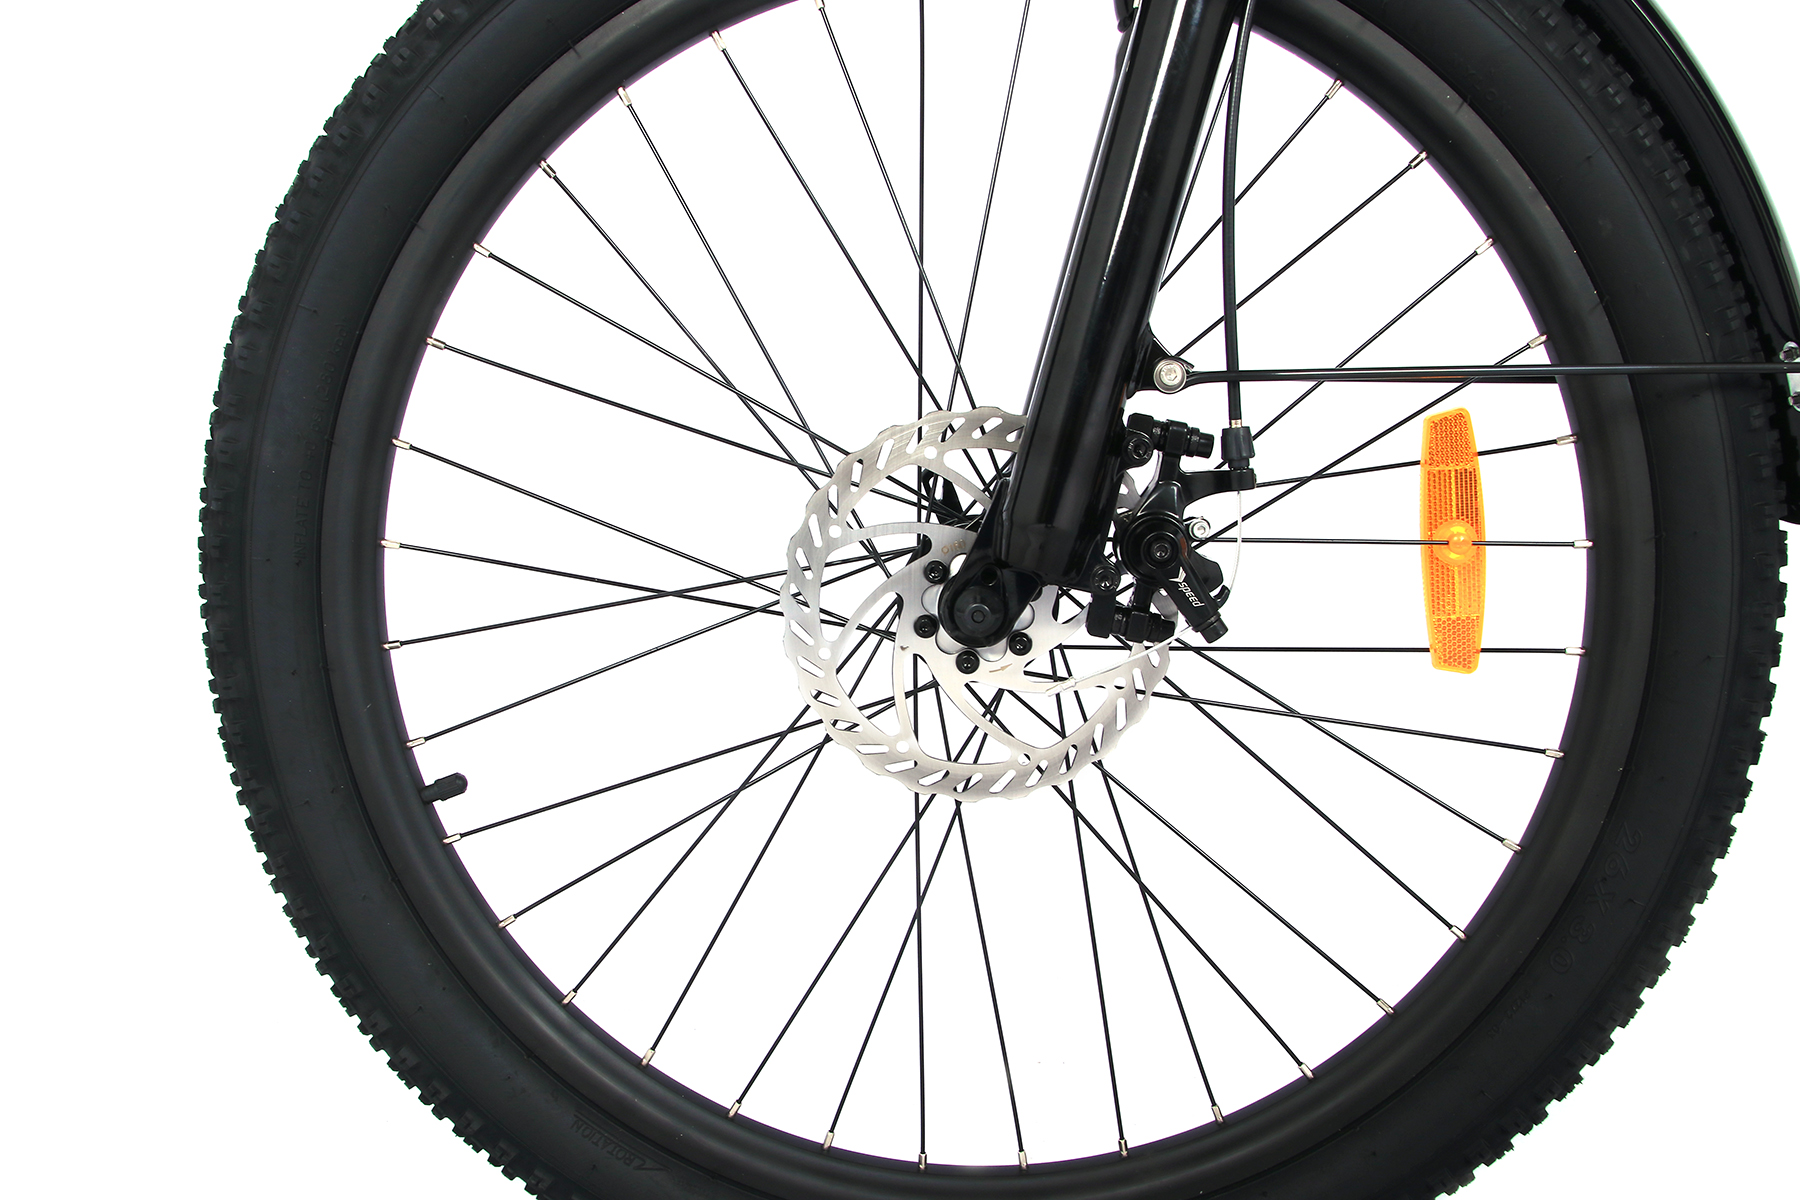 ONESPORT 250W City Bike - Bike (ATB) Mattschwarz) (Laufradgröße: stoßdämpfende 26 Zoll, Federgabel Unisex-Rad, Terrain All